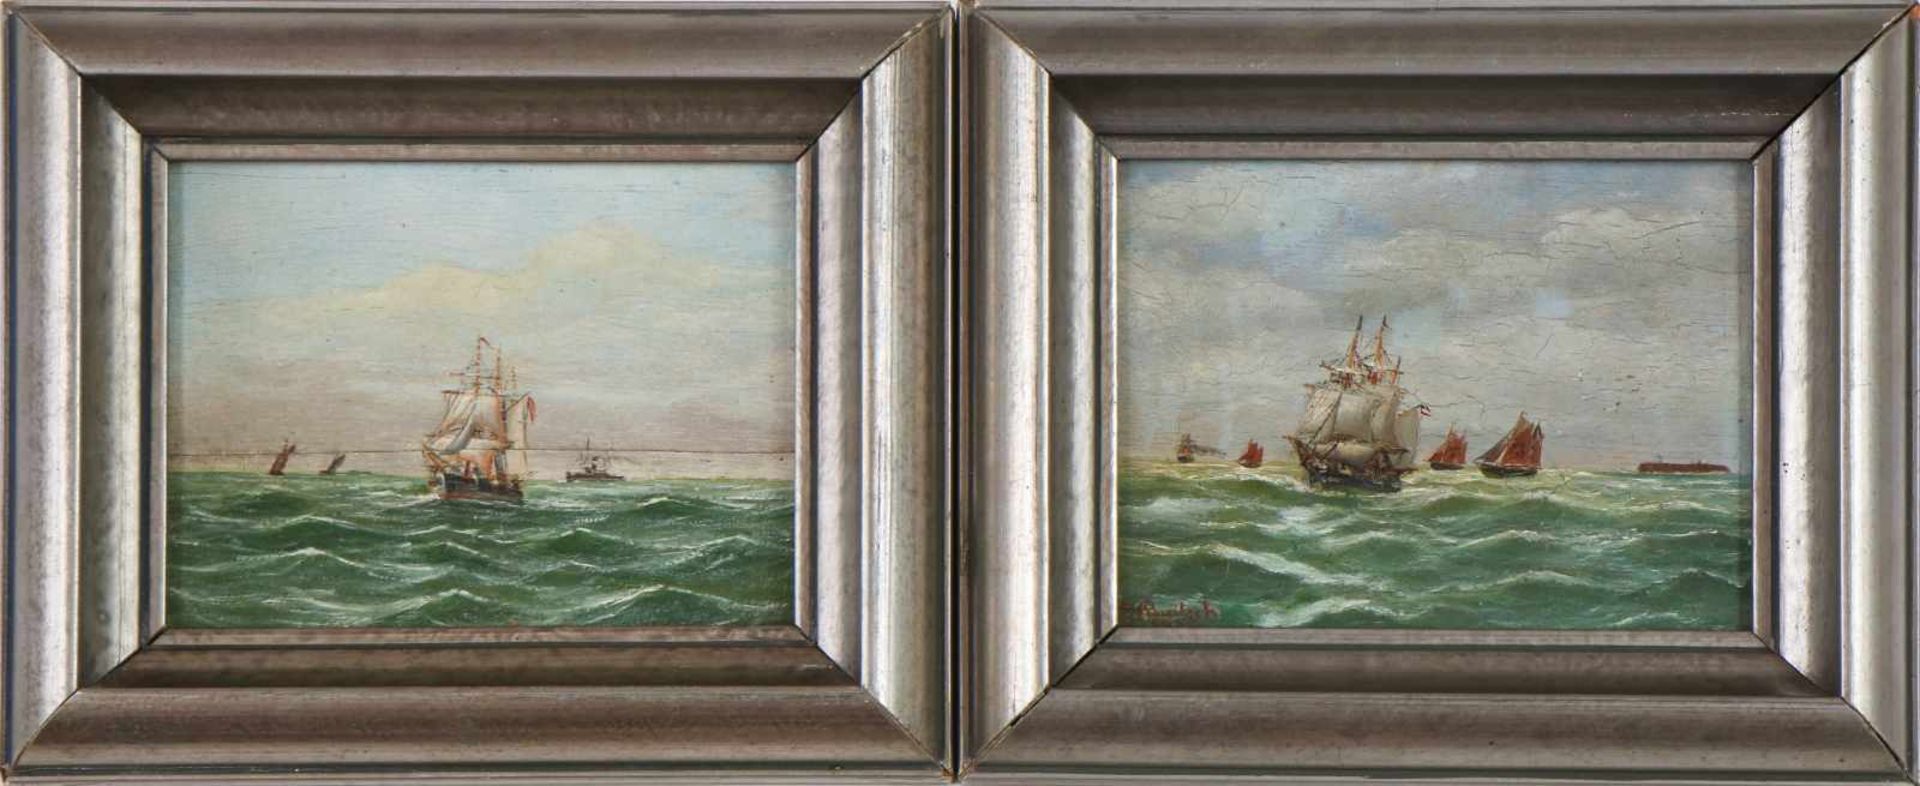 UNBEKANNTER KÜNSTLER des 19. JahrhundertsPaar Ölgemälde auf Holzplatte, ¨3-Mast-Bark begleitet